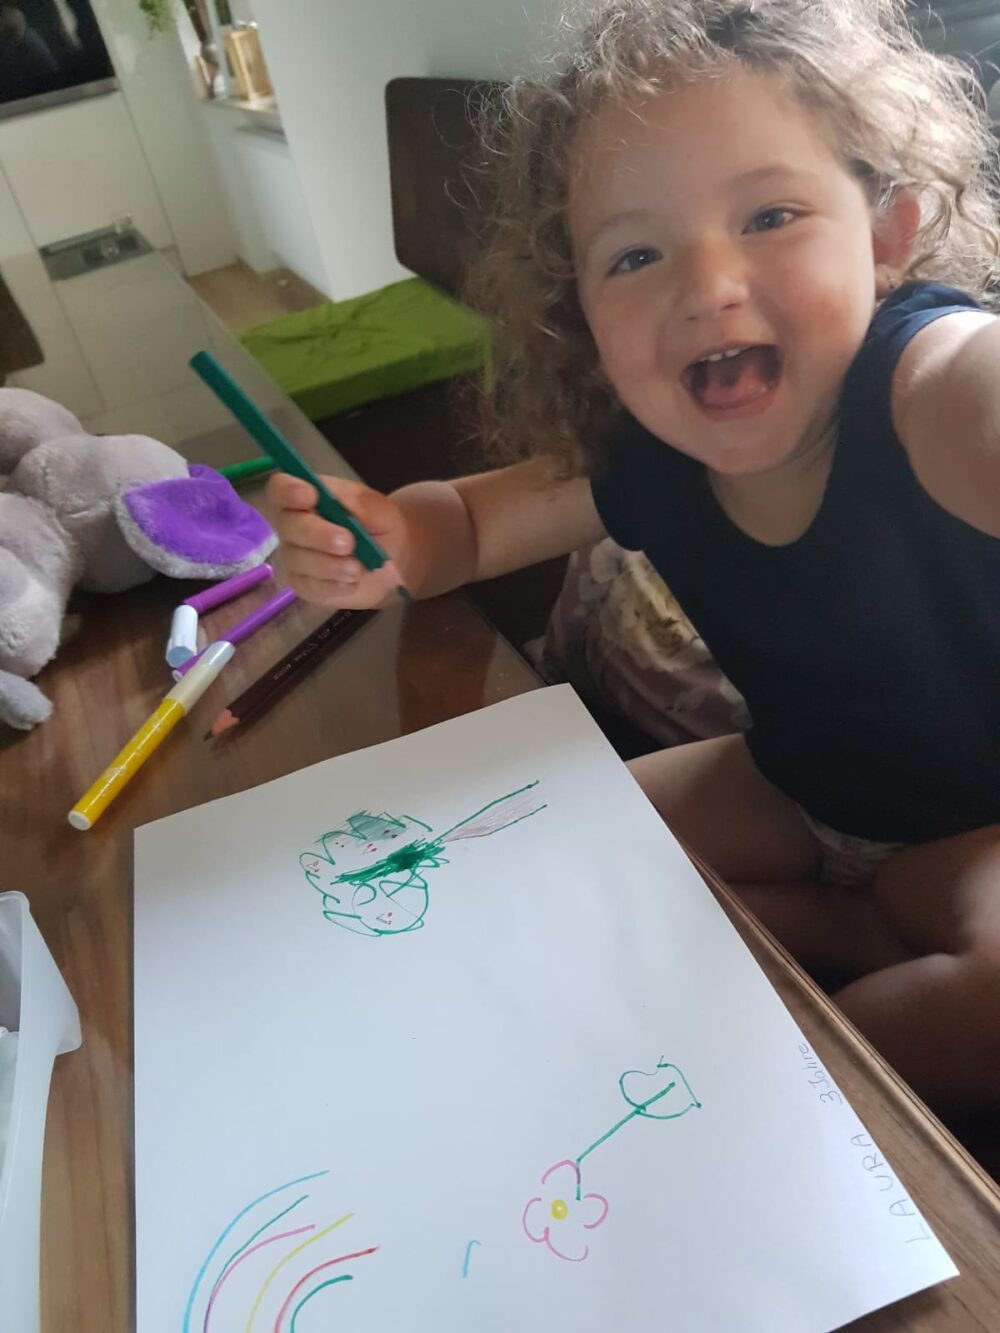 Kind beim Zeichnen